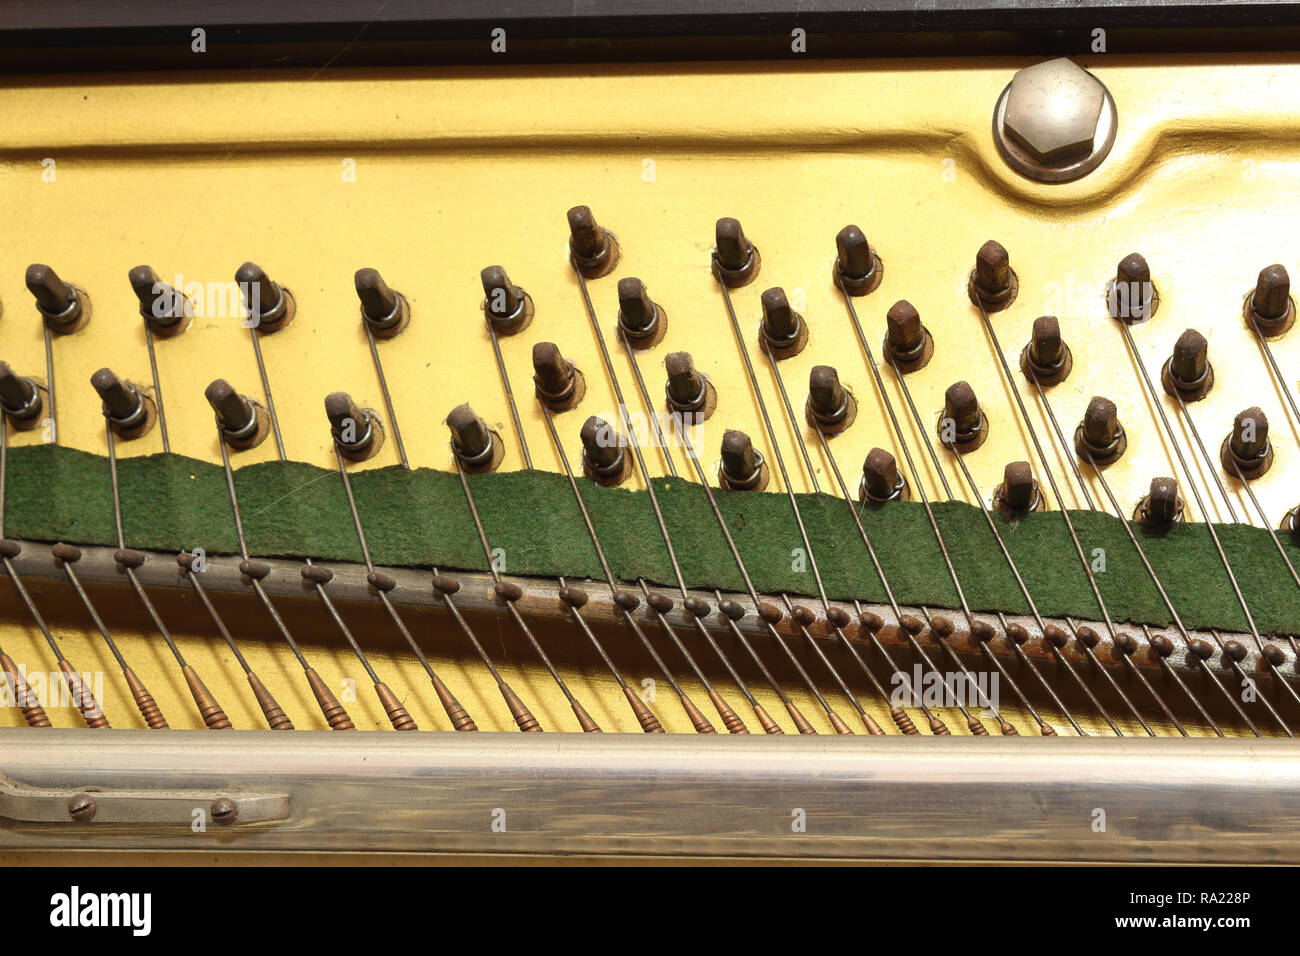 Eine enge Sicht auf die Platte der ein Klavier Musikinstrument, mit Bolzen der Anhängevorrichtung für das Tuning der Saiten, die über die Brücke pass verwendet Stockfoto